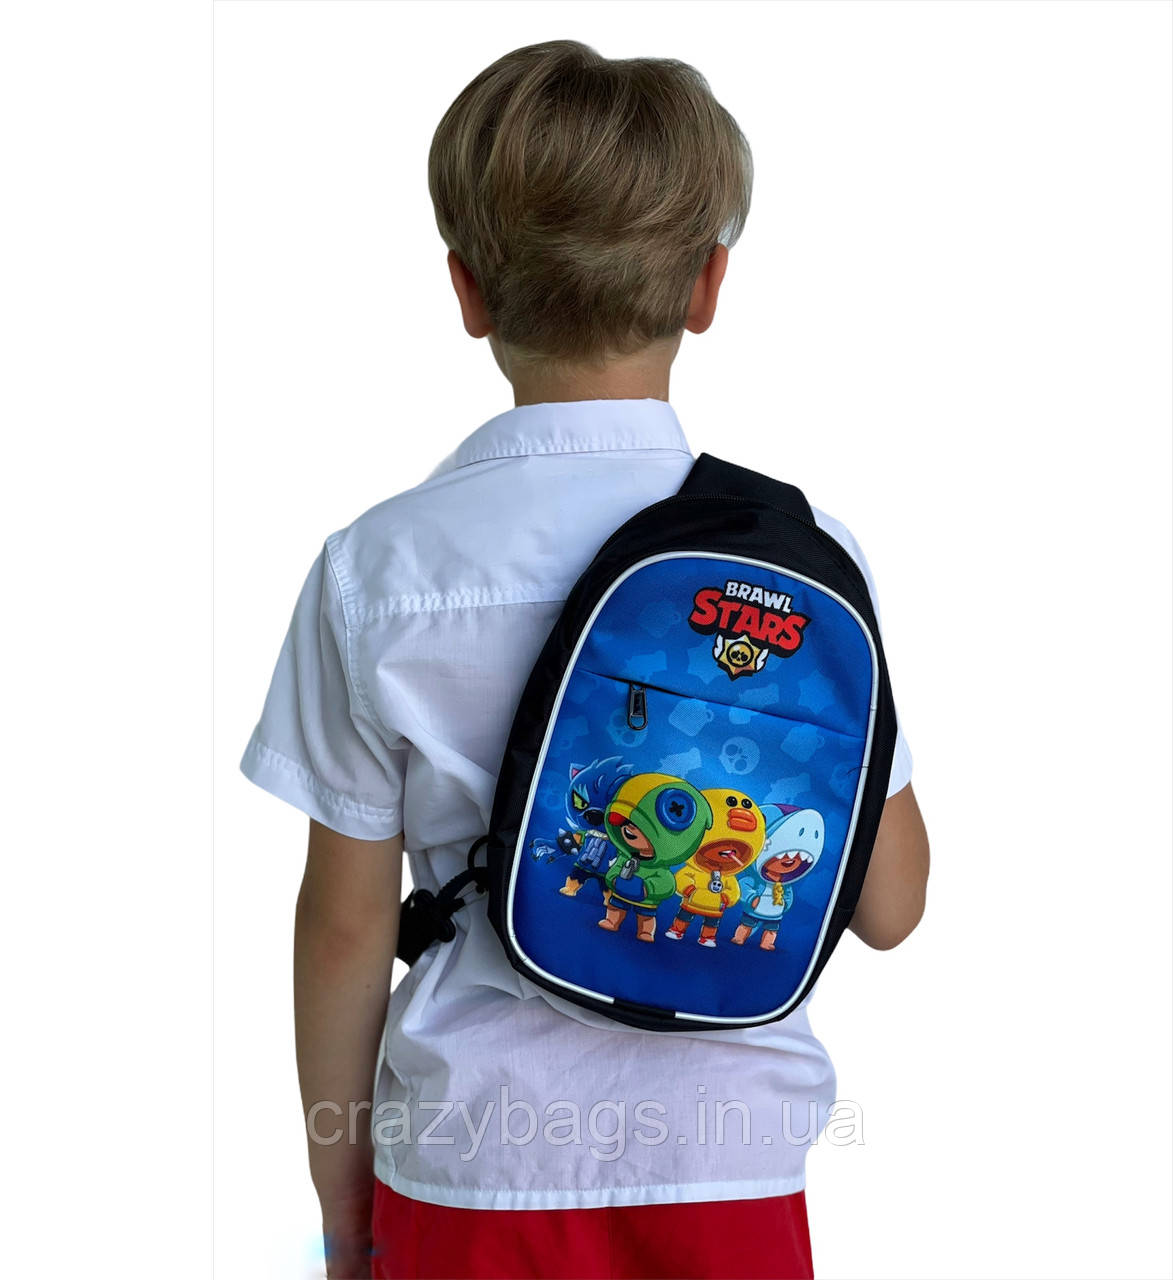 Стильна сумка 4 героя Бравл Старс для хлопчиків 6-12 років від Crazy Bags - 28х22 см